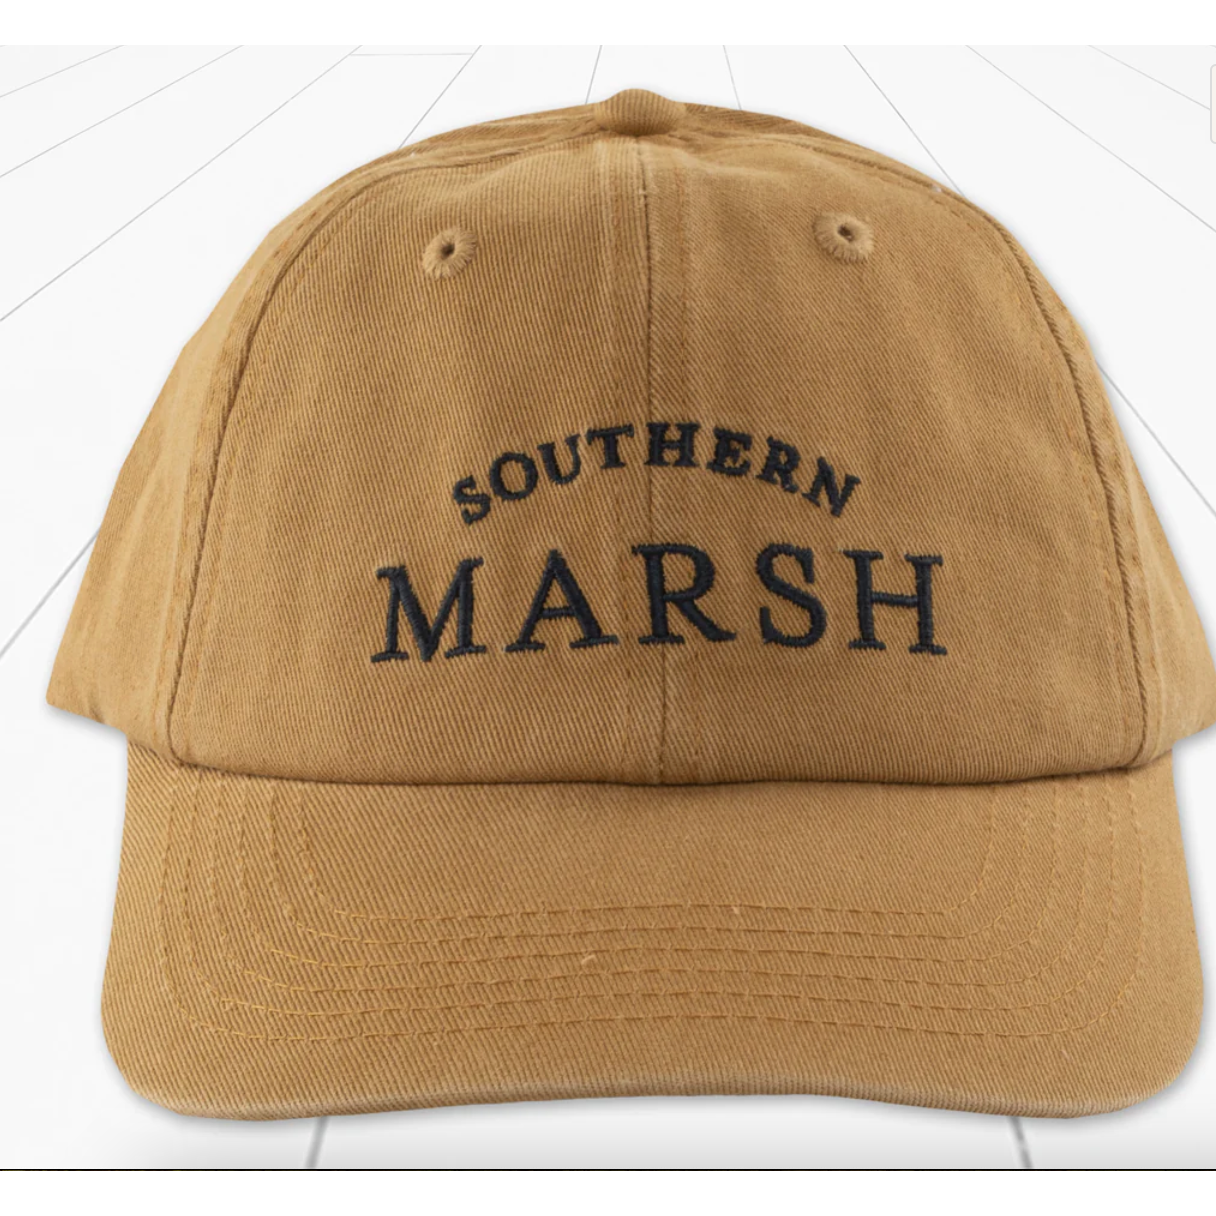 Southern Marsh Vintage Collegiate Hat